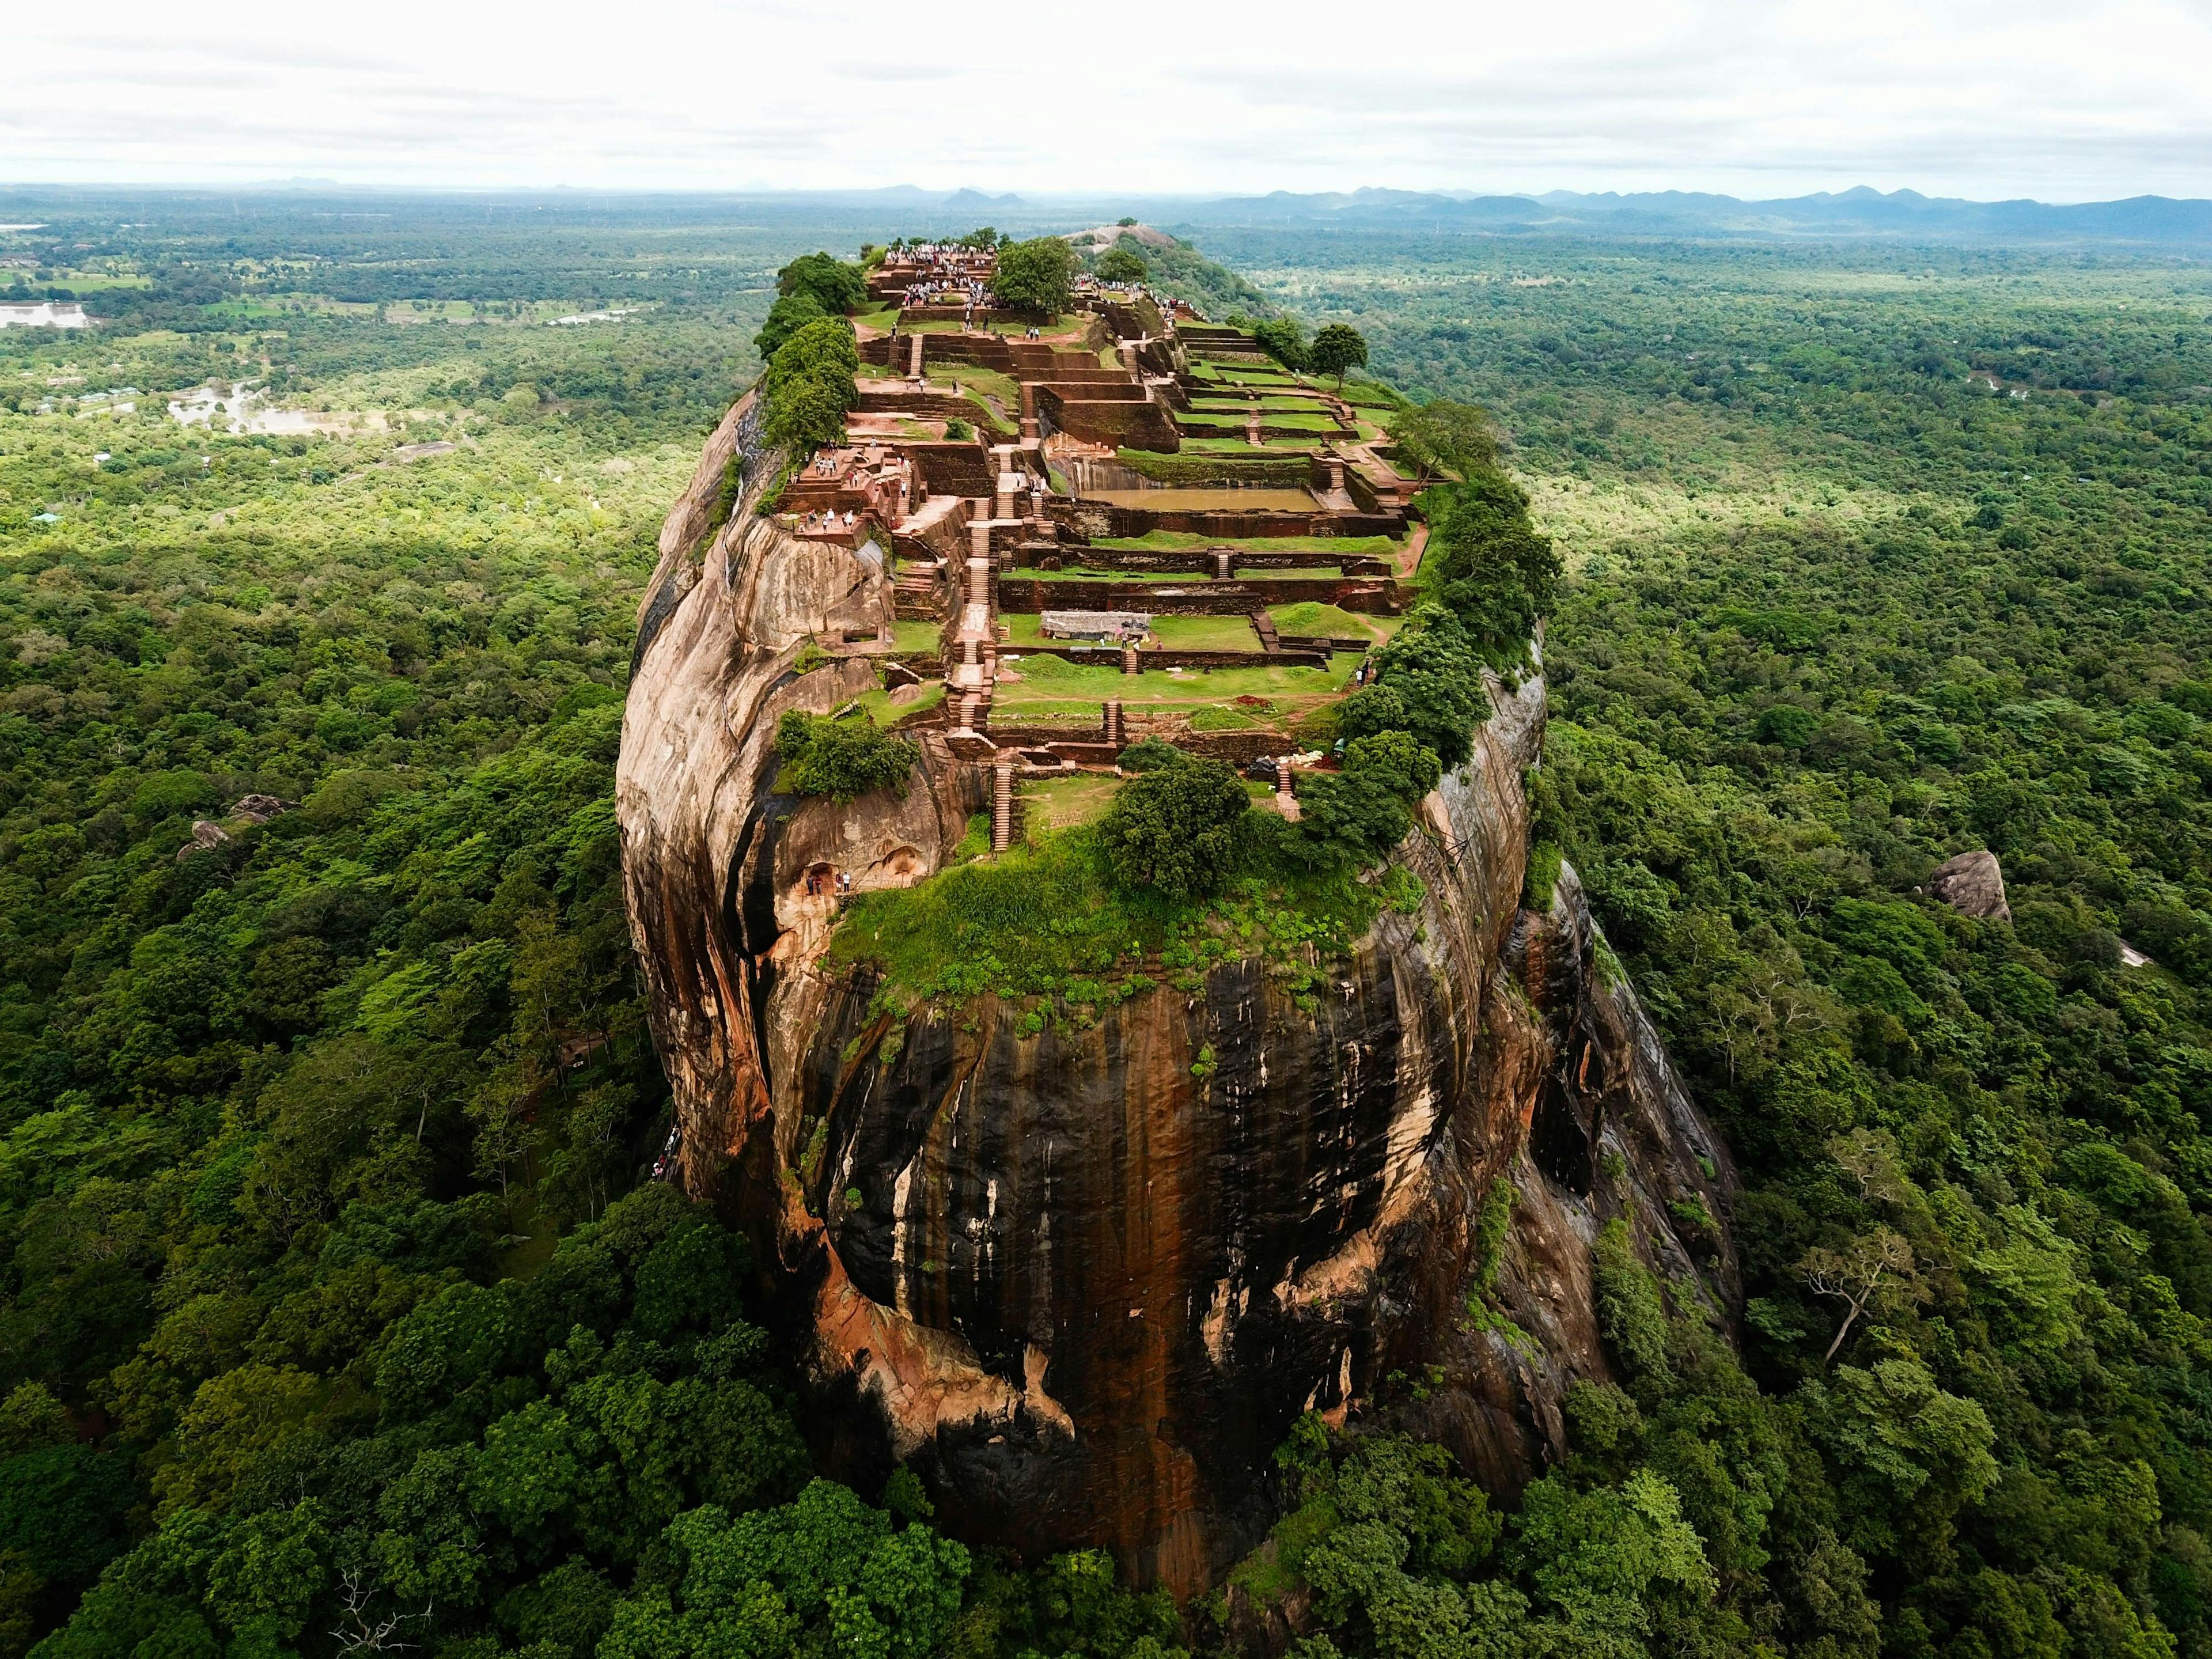 Sigiriya rock fortress in Sri Lanka.